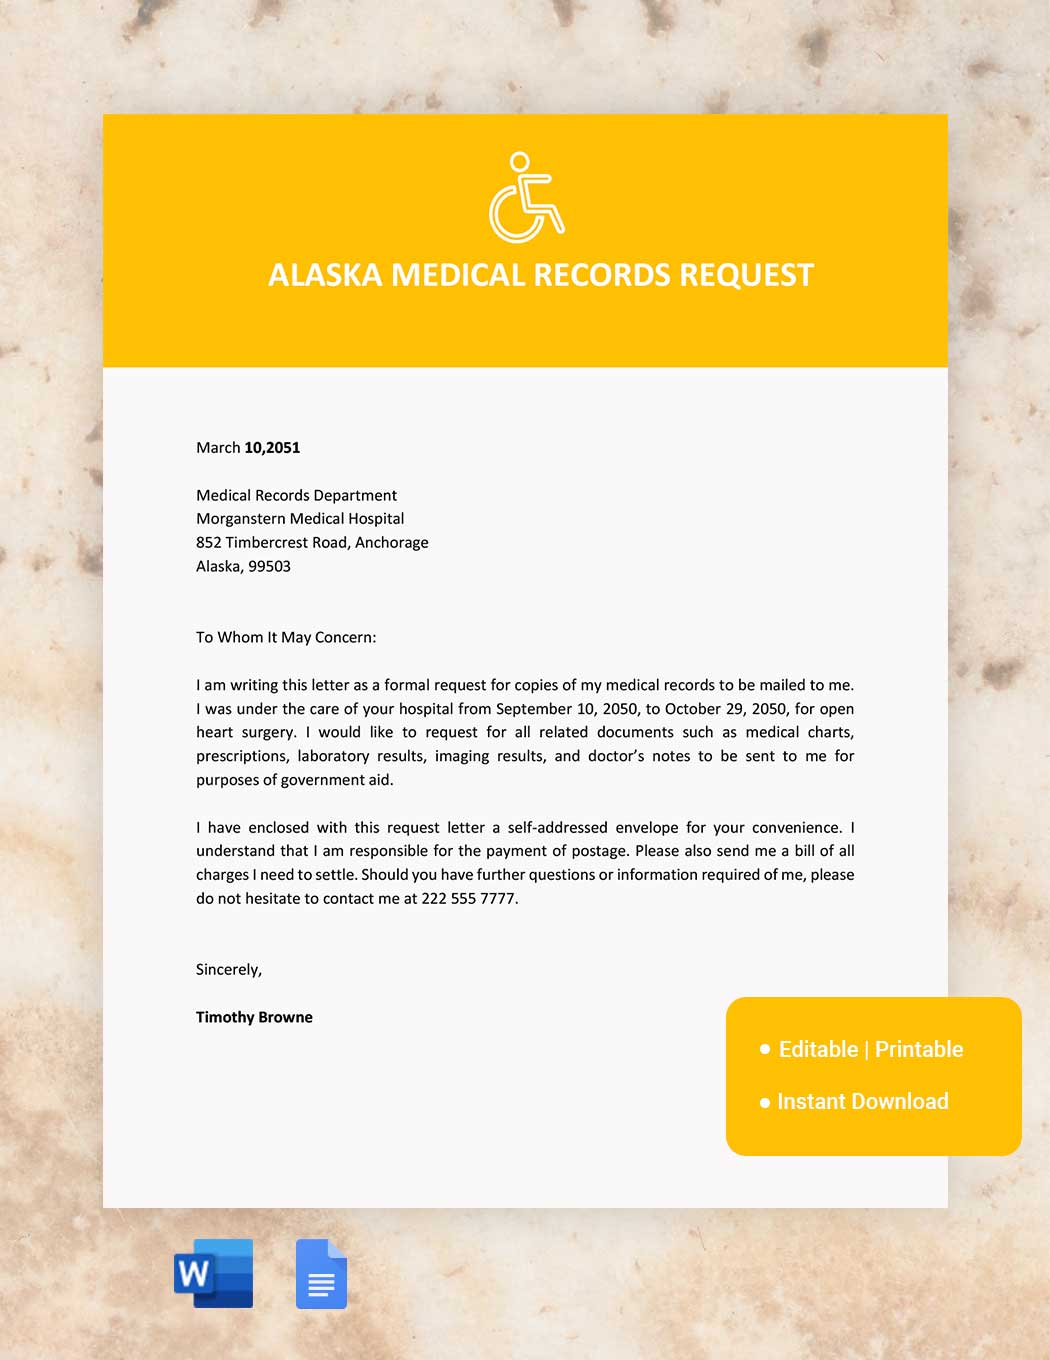 Alaska Medical Records Request Template